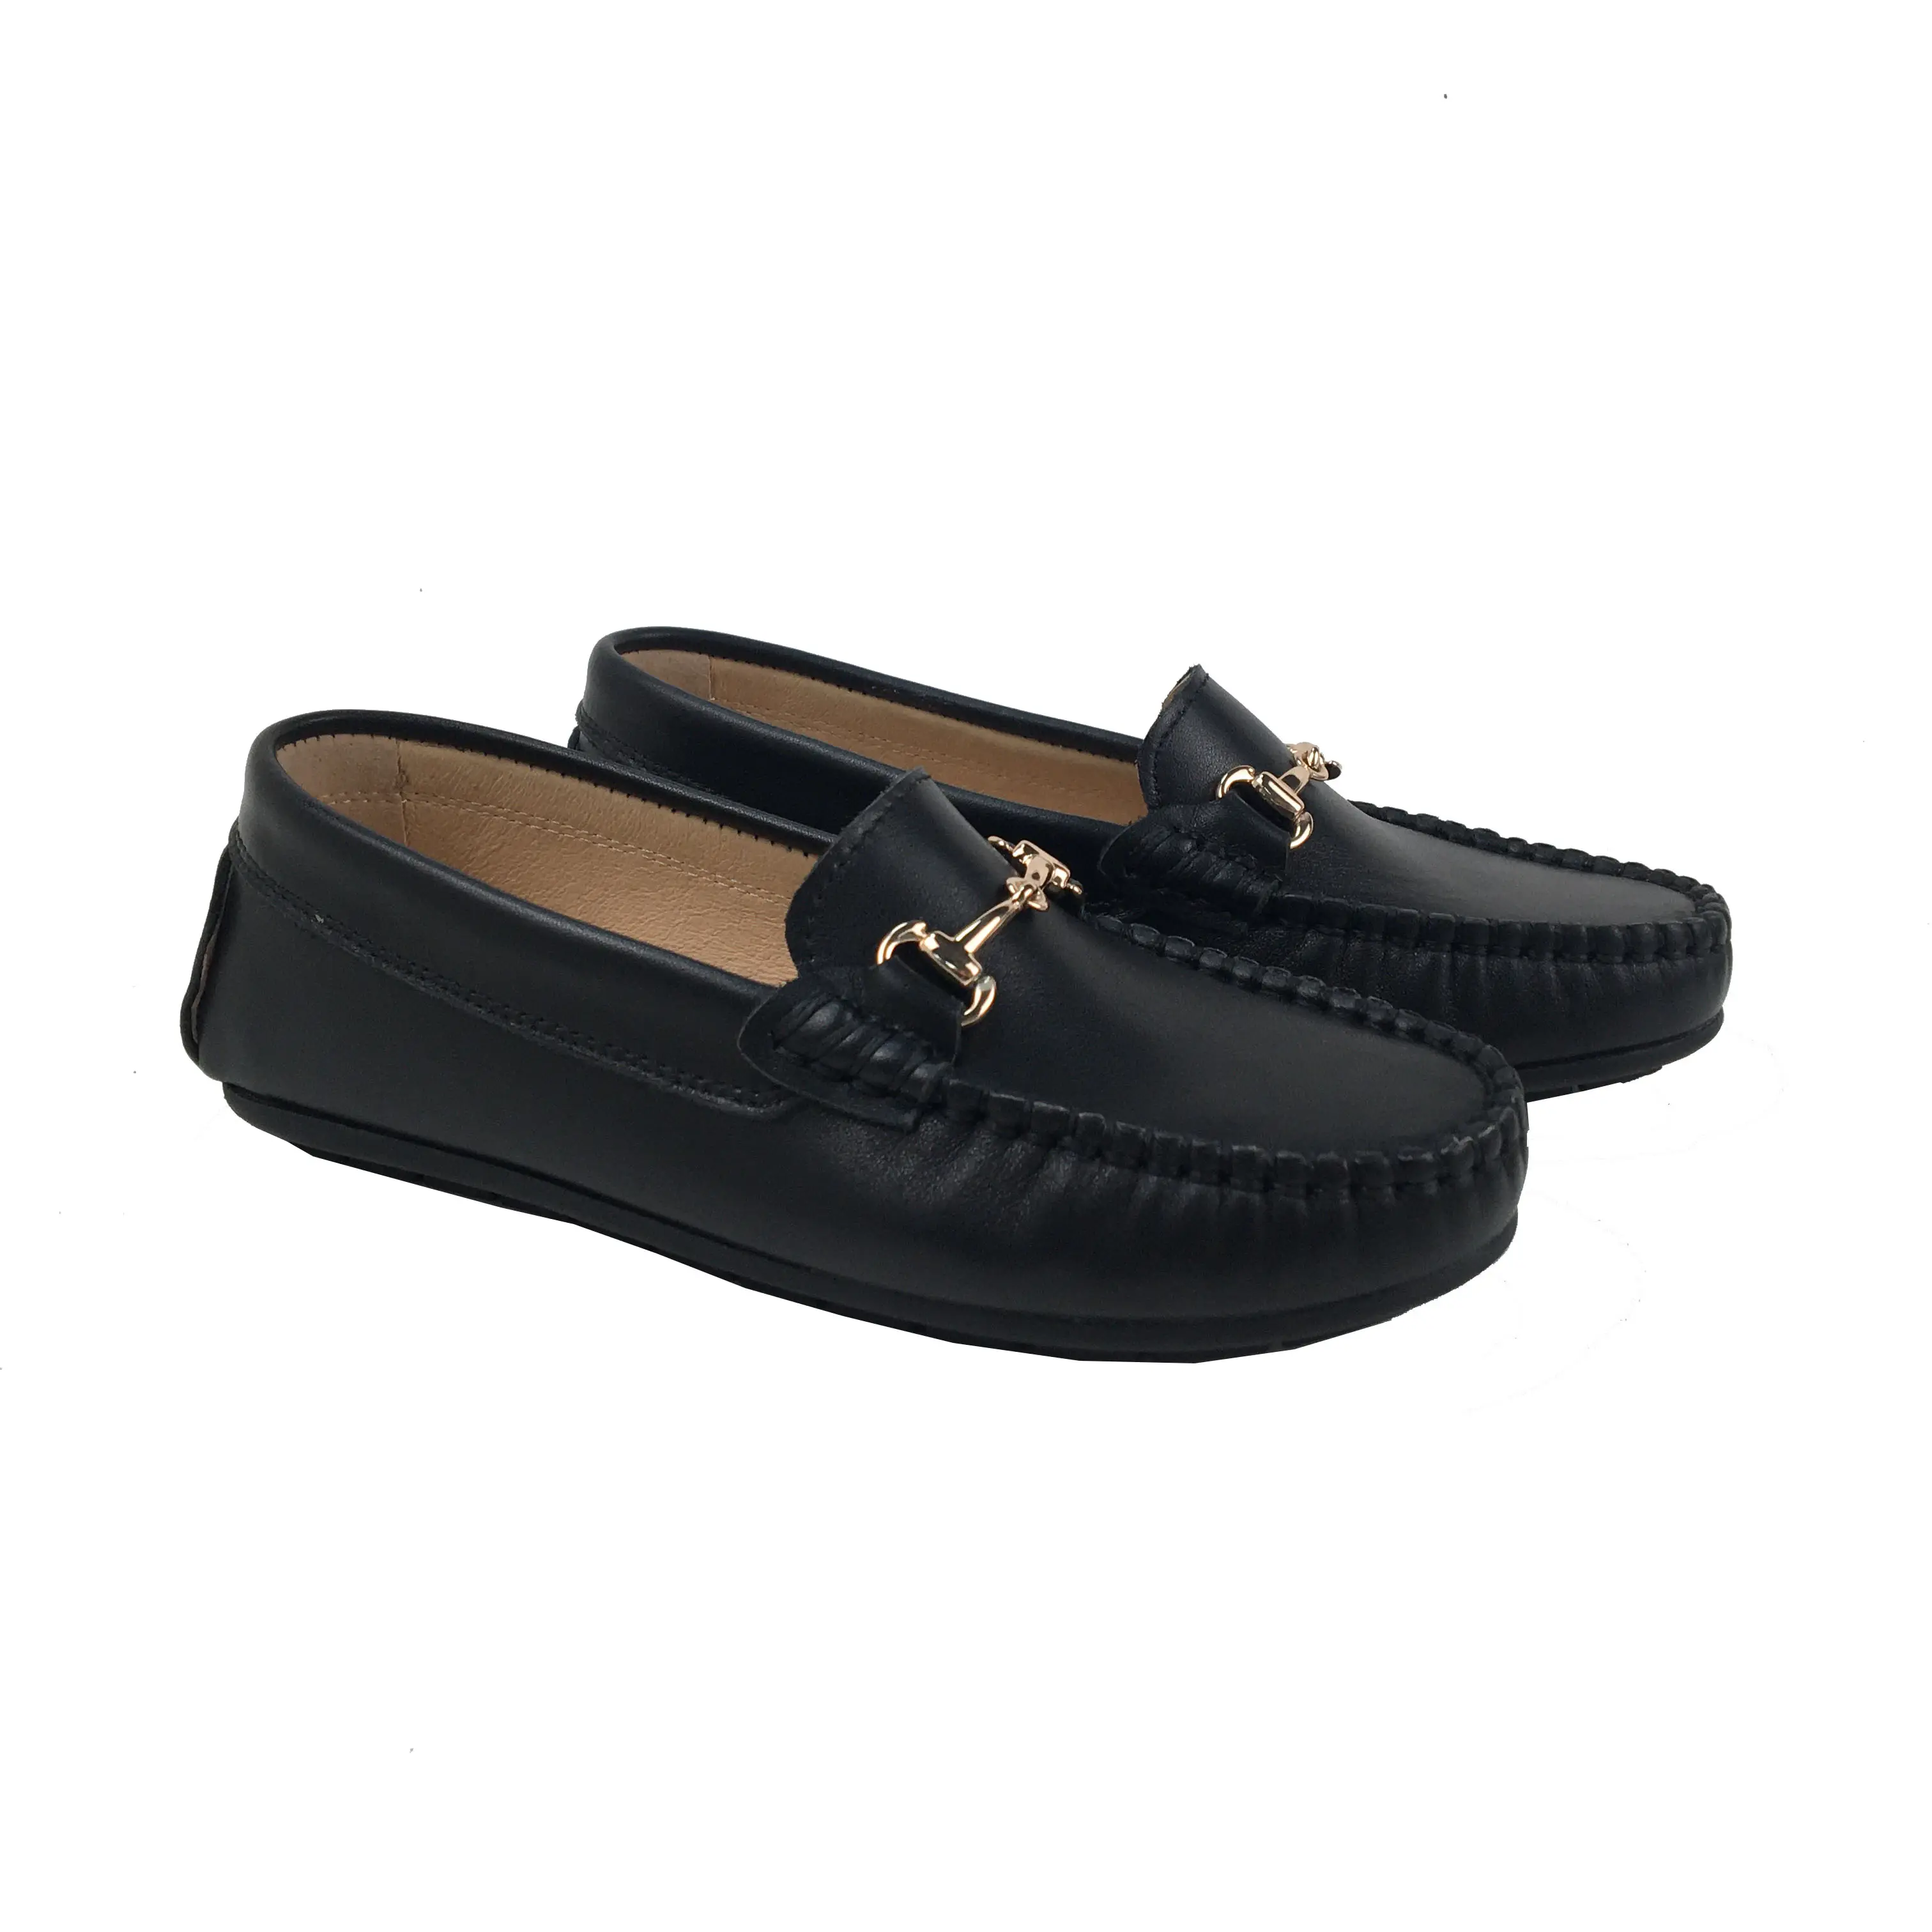 Chaussures de fête de couleur noire pour enfants de haute qualité pour les jeunes garçons école mocassins mocassins mode chaussures décontractées